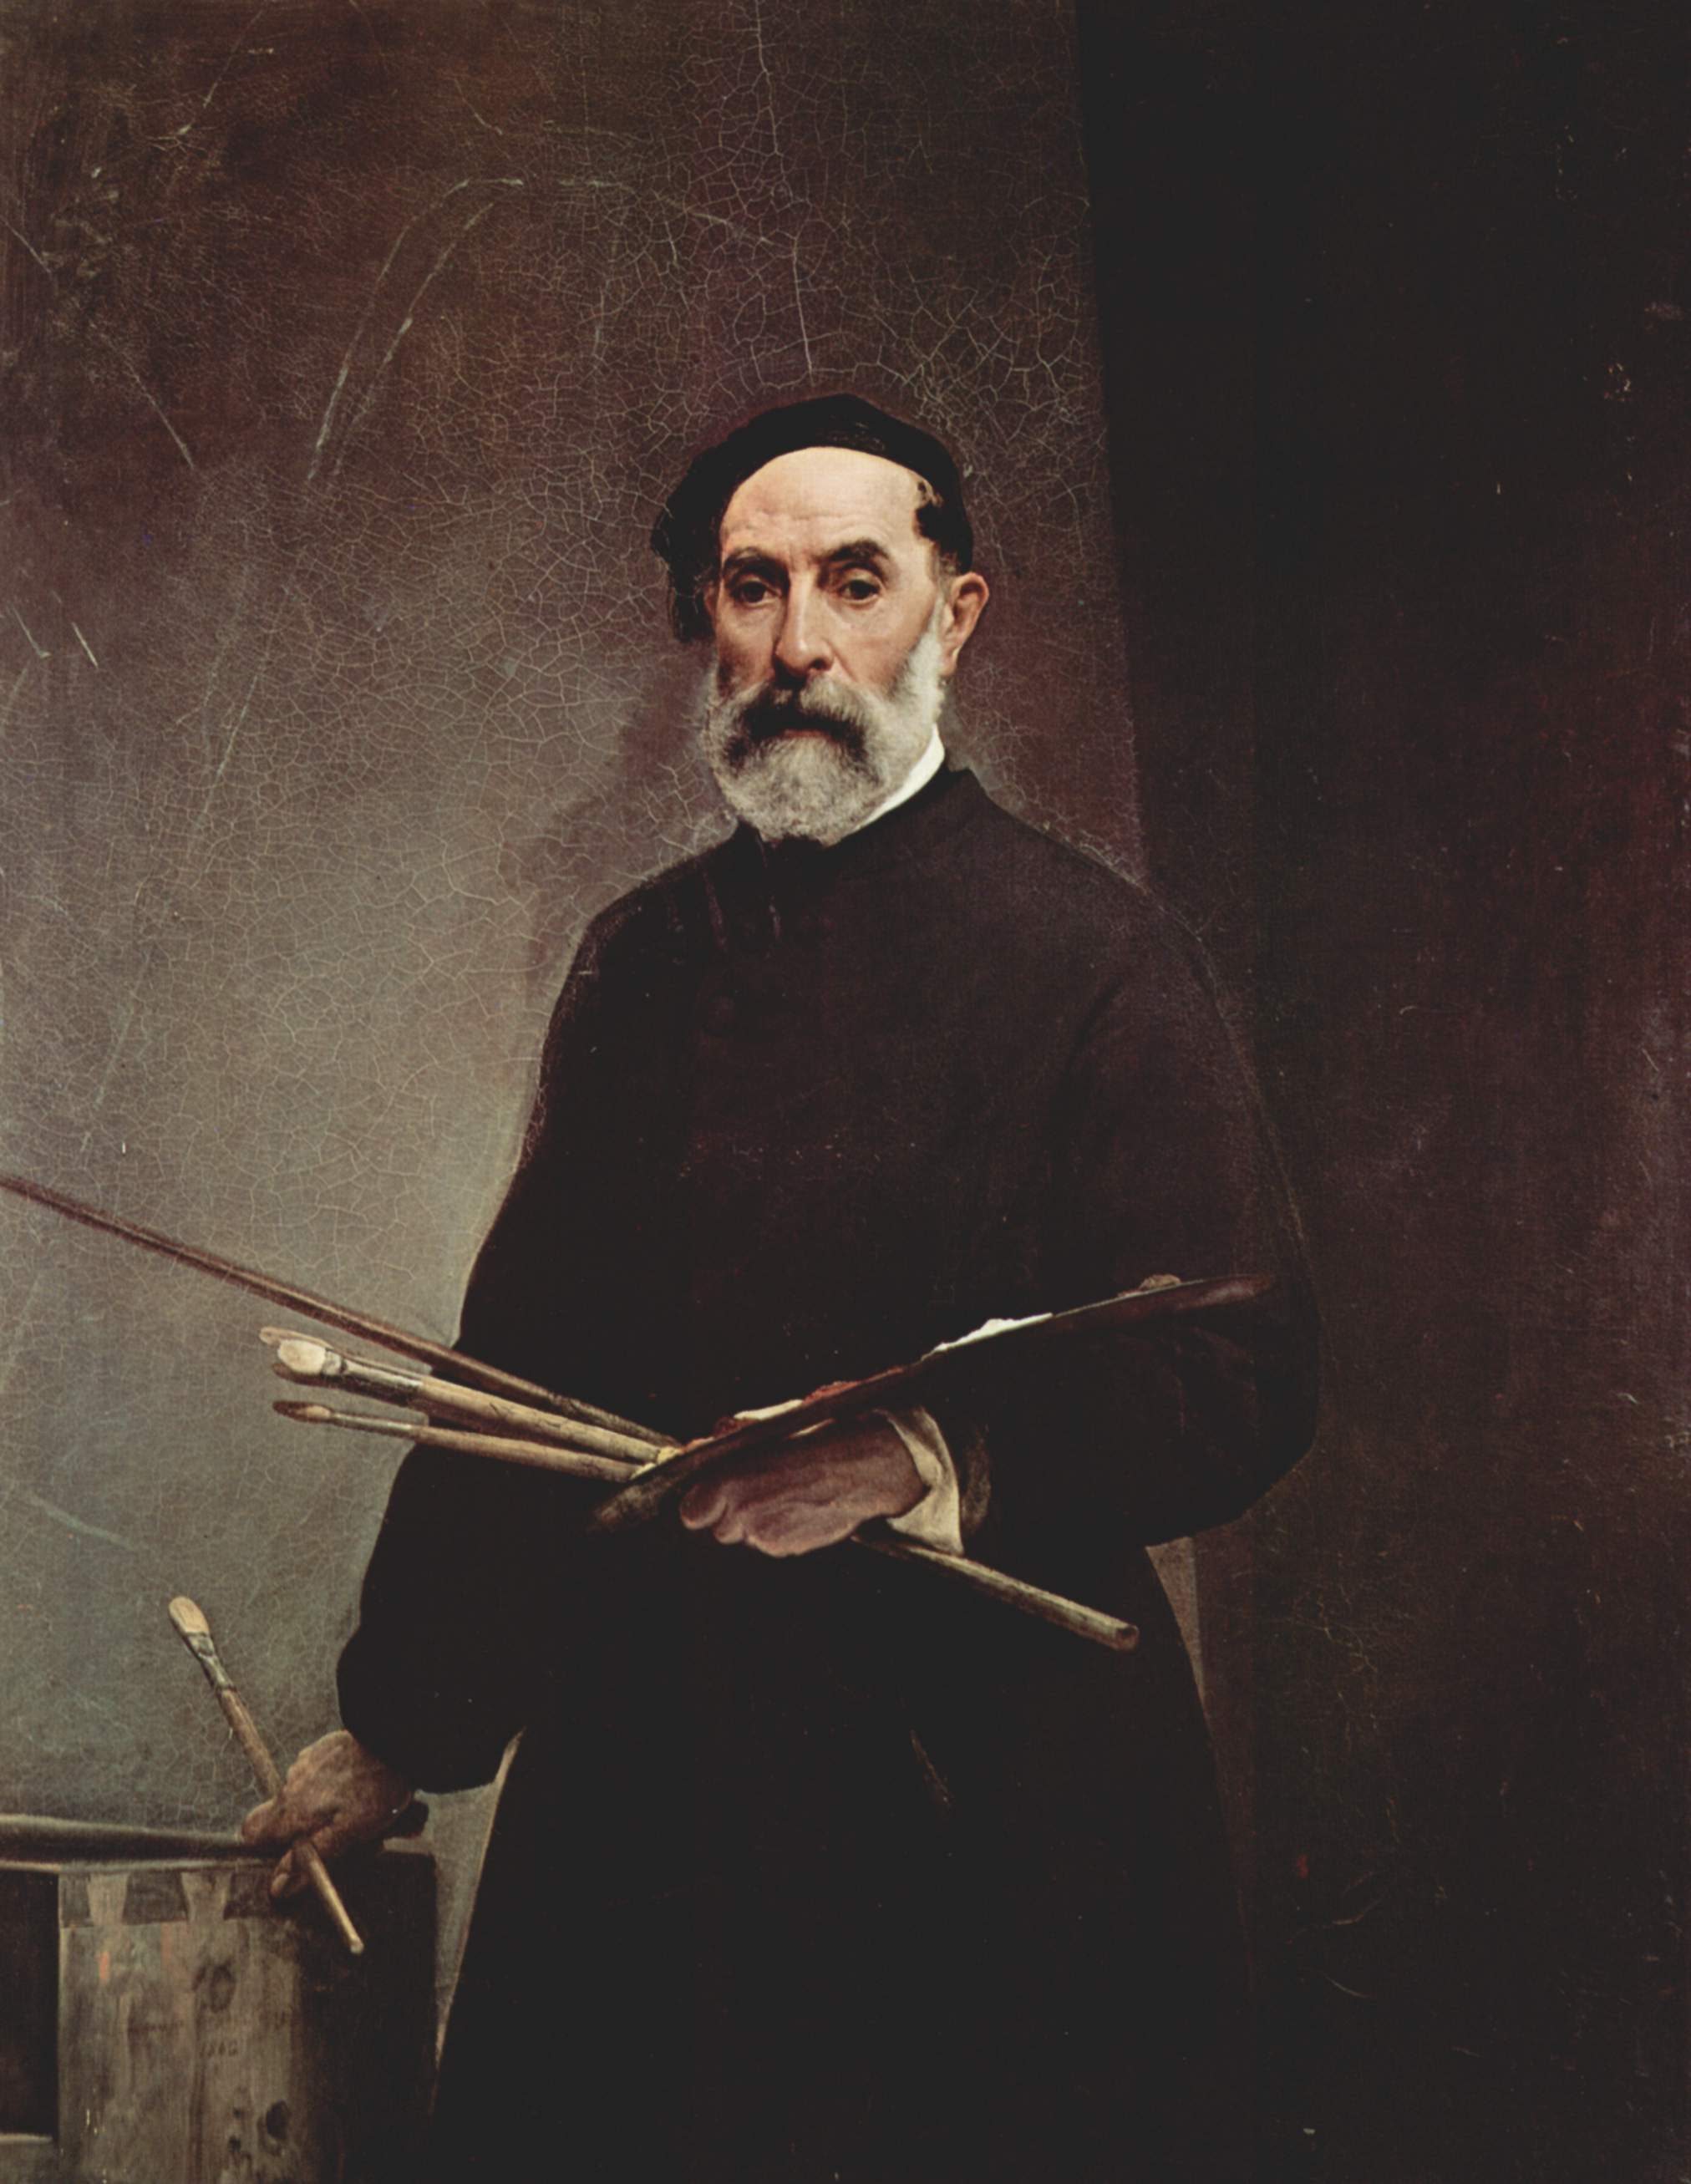 Francesco Hayez - 10. Februar 1791 - 21. Dezember 1882